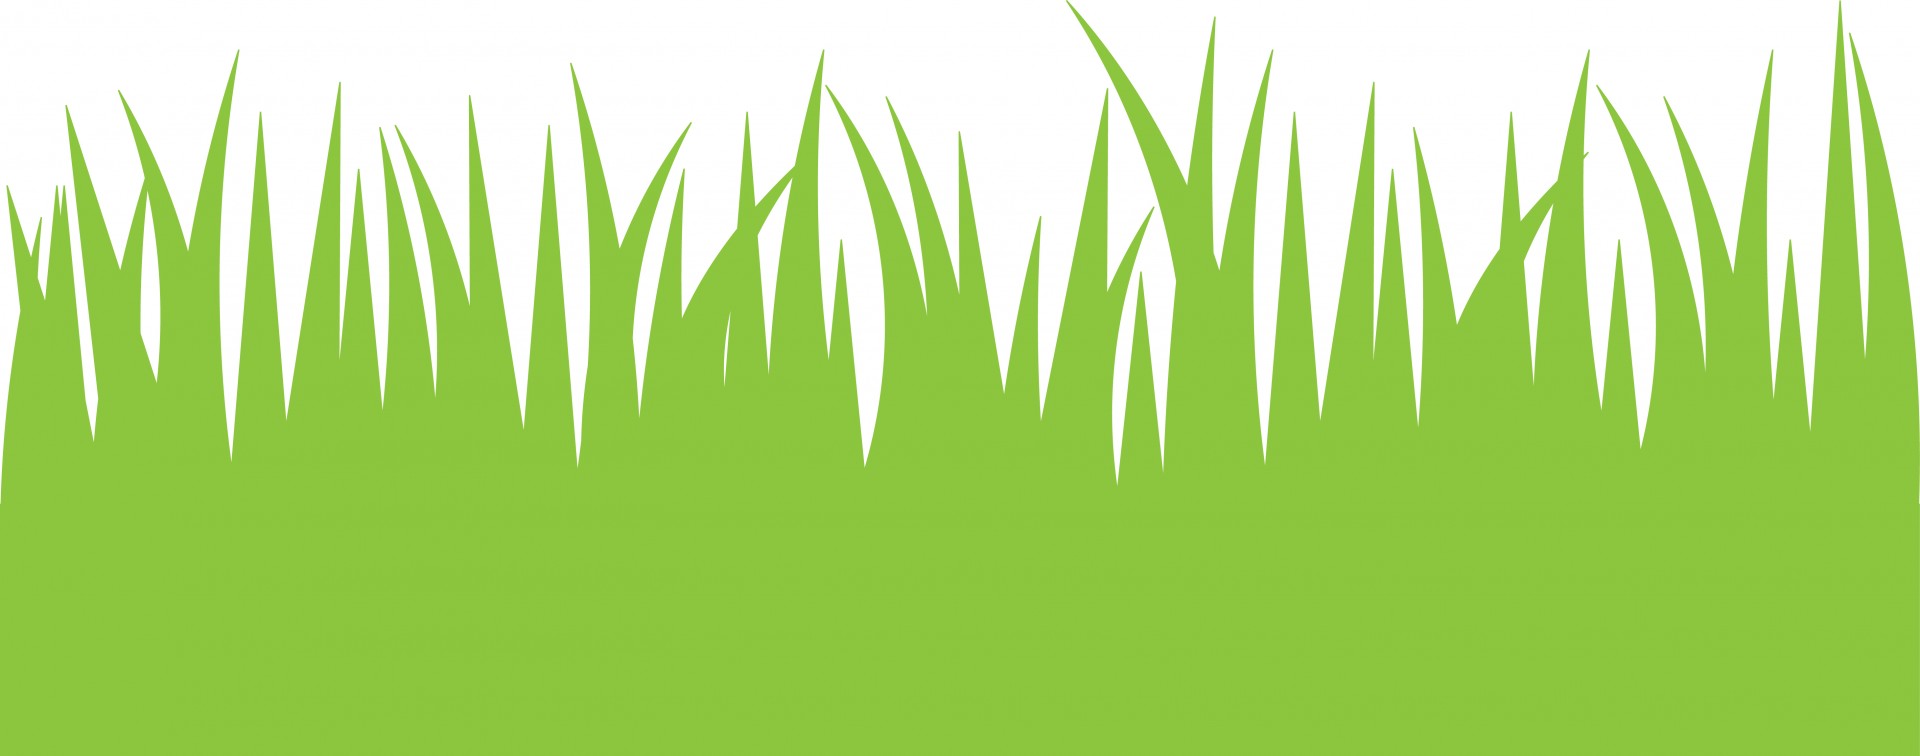 Green Grass Clipart - Grass Clipart